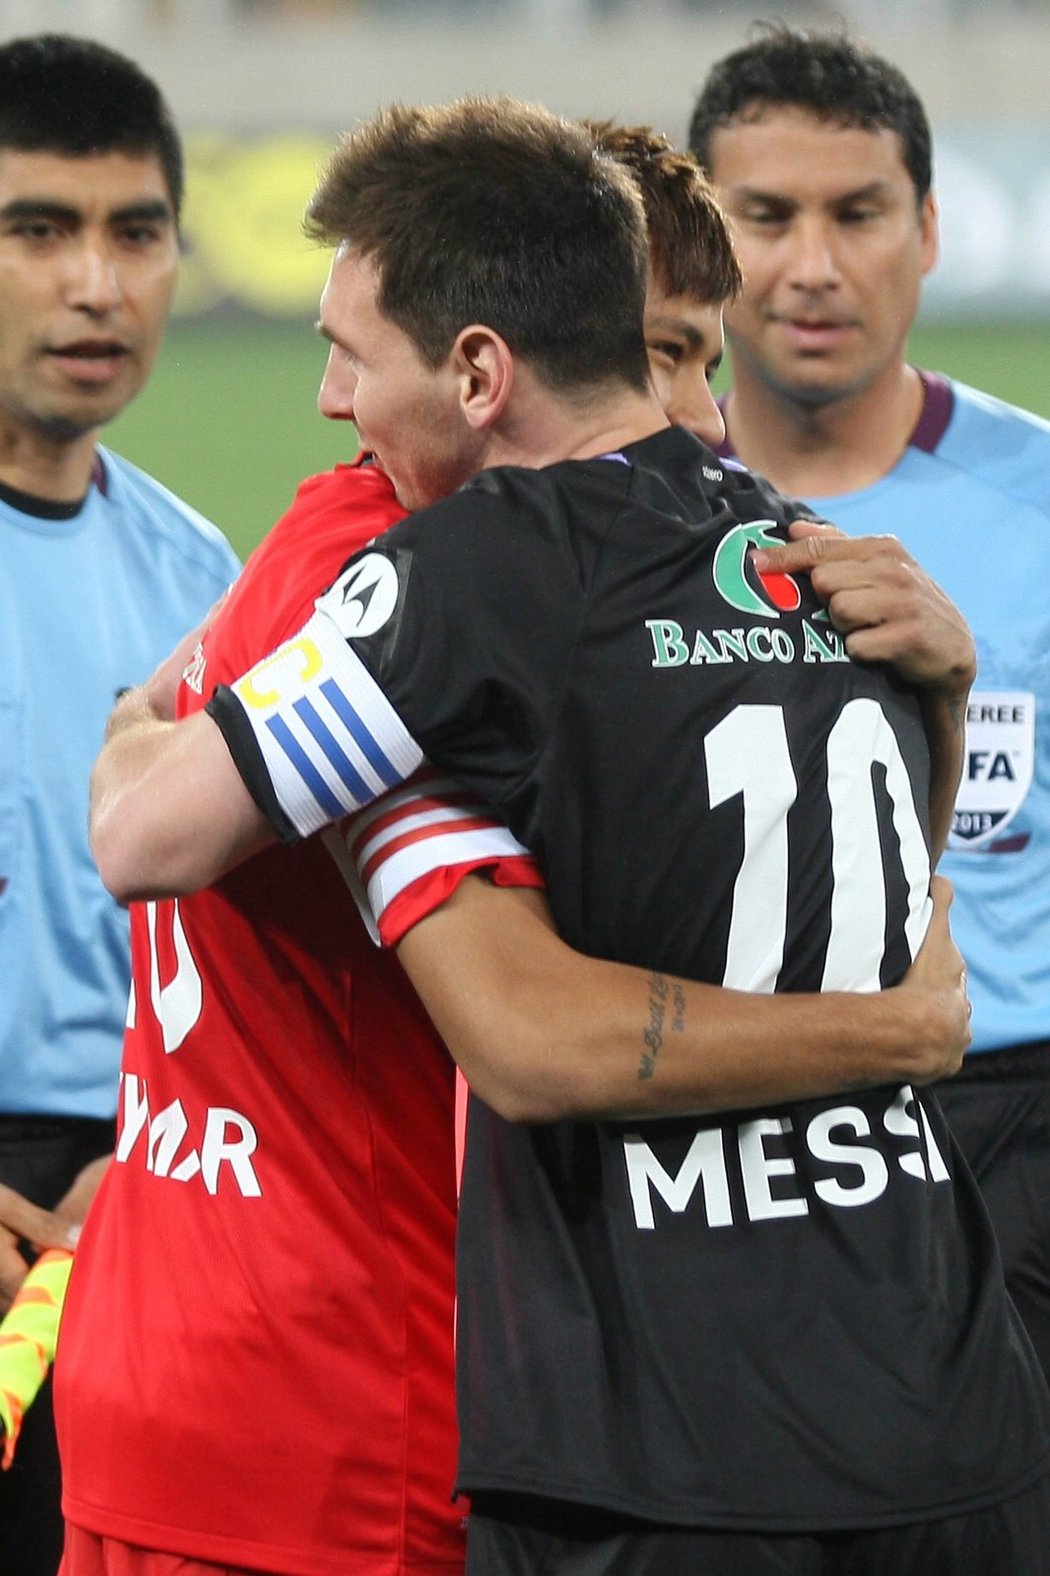 Přátelský zápas i přátelská gesta. Messi sice Neymarův tým porazil, na spolupráci v dresu Barcelony se ale už teď těší